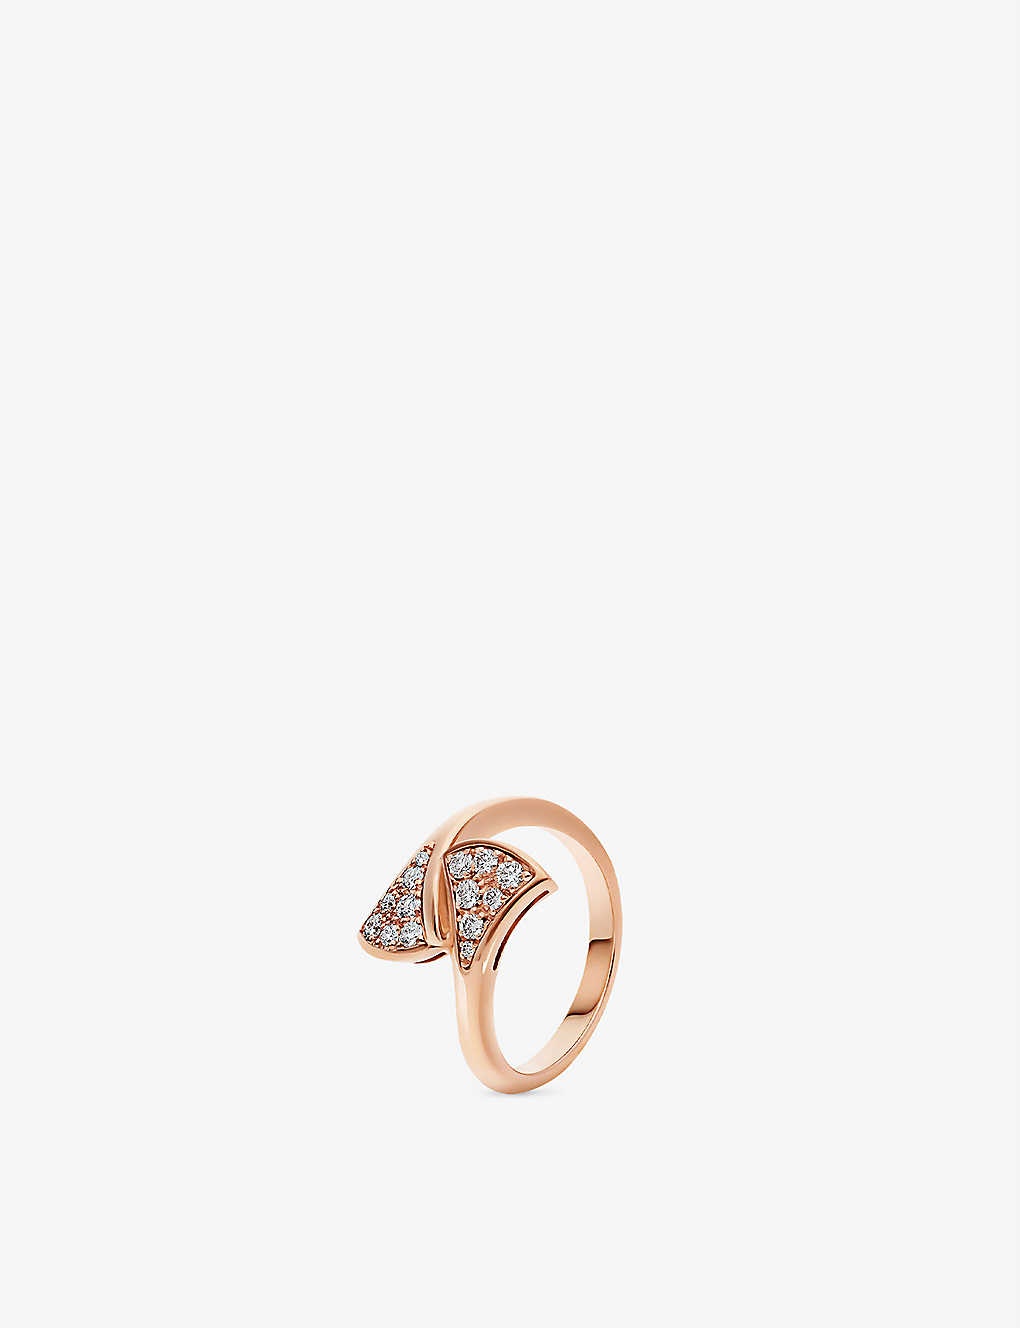 Diva's Dream 18ct rose-gold and 0.17ct brilliant-cut diamond ring - 1